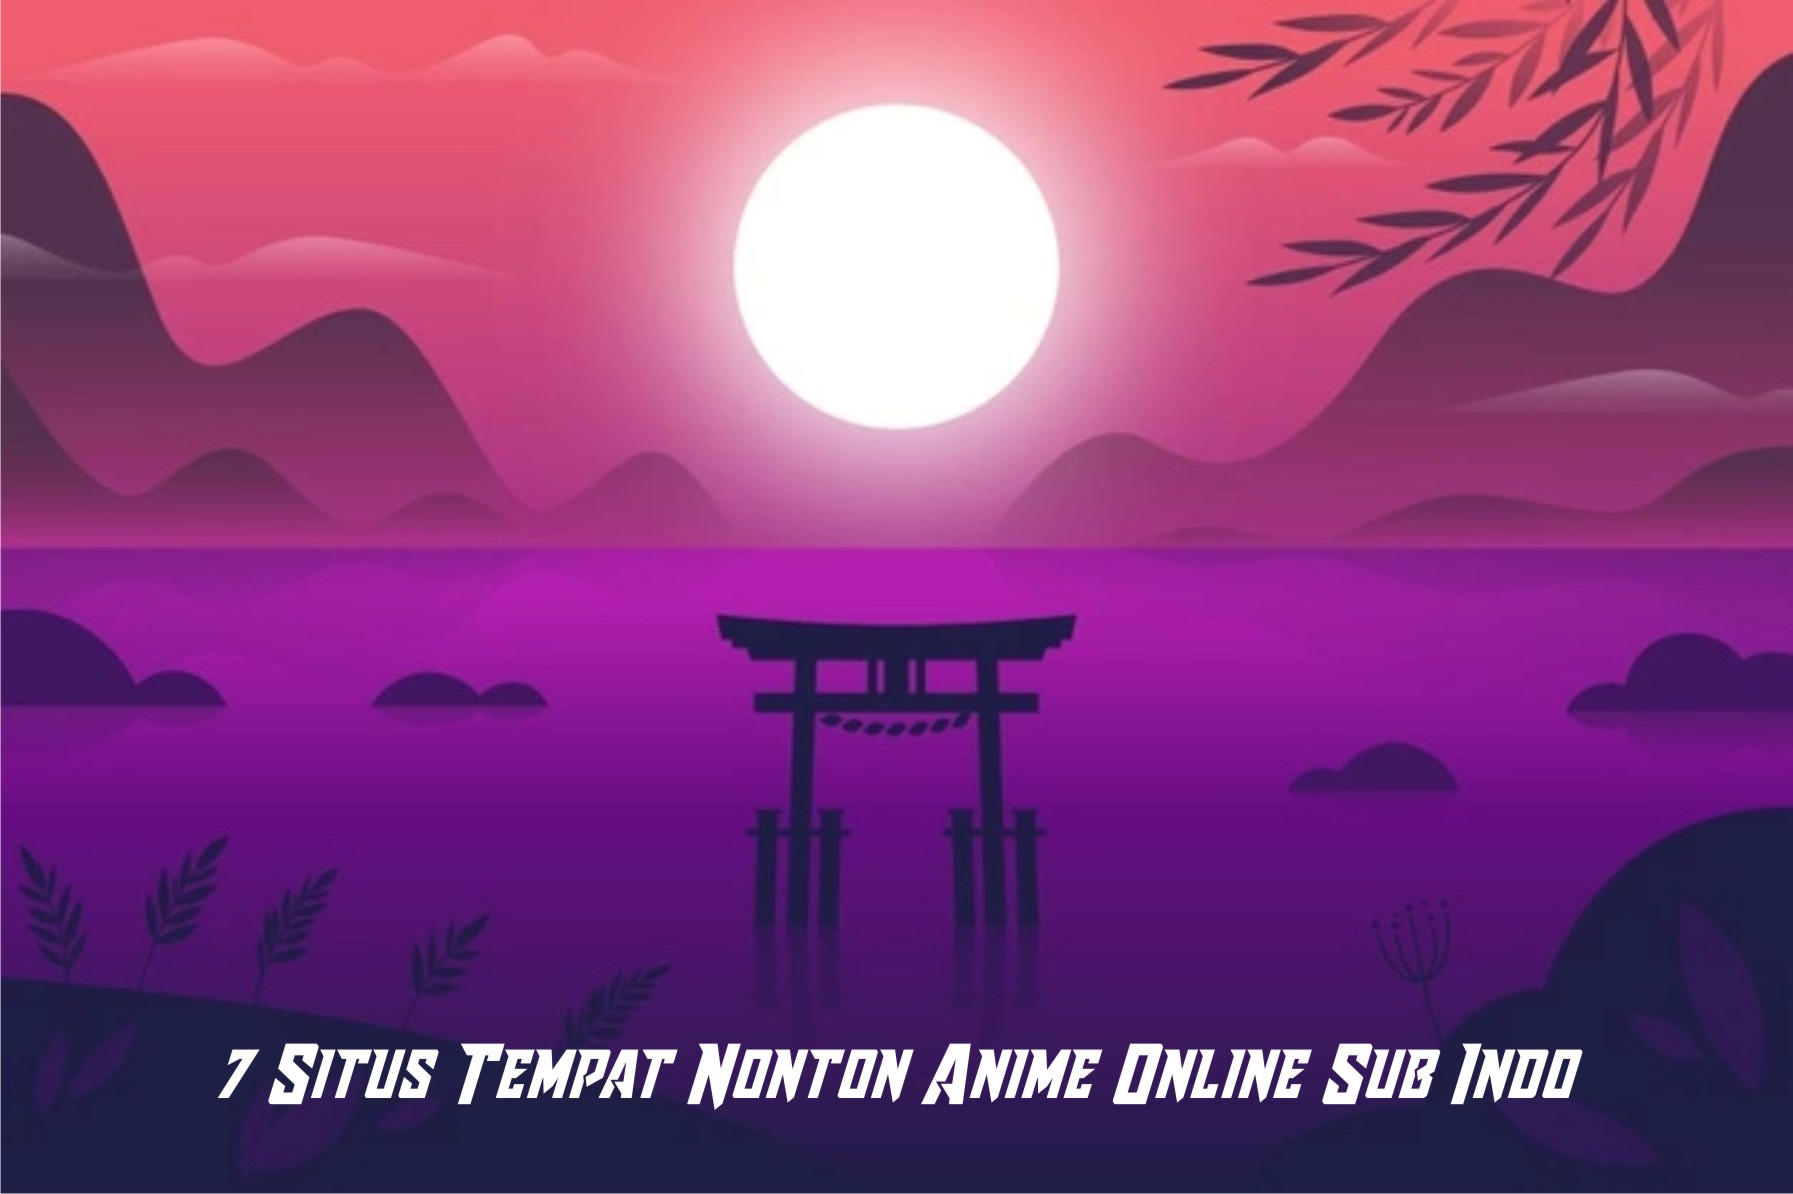 Situs Nonton Anime Online Sub Indo